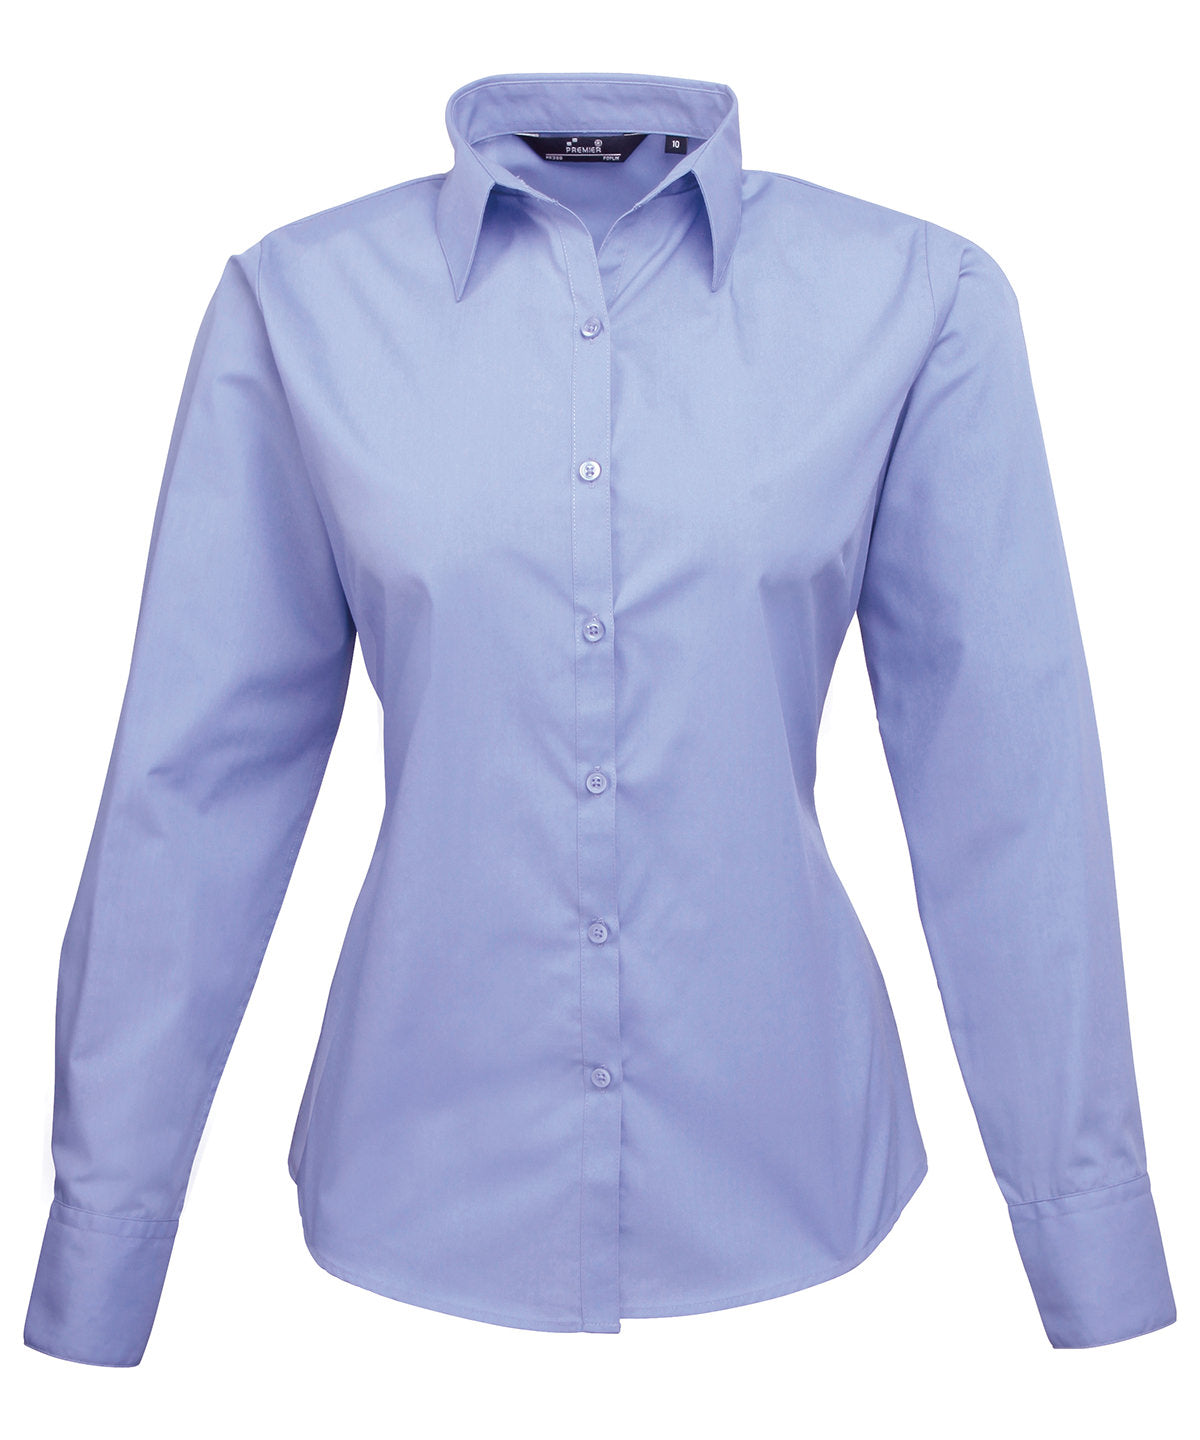 Premier Women's poplin long sleeve blouse Mid blue